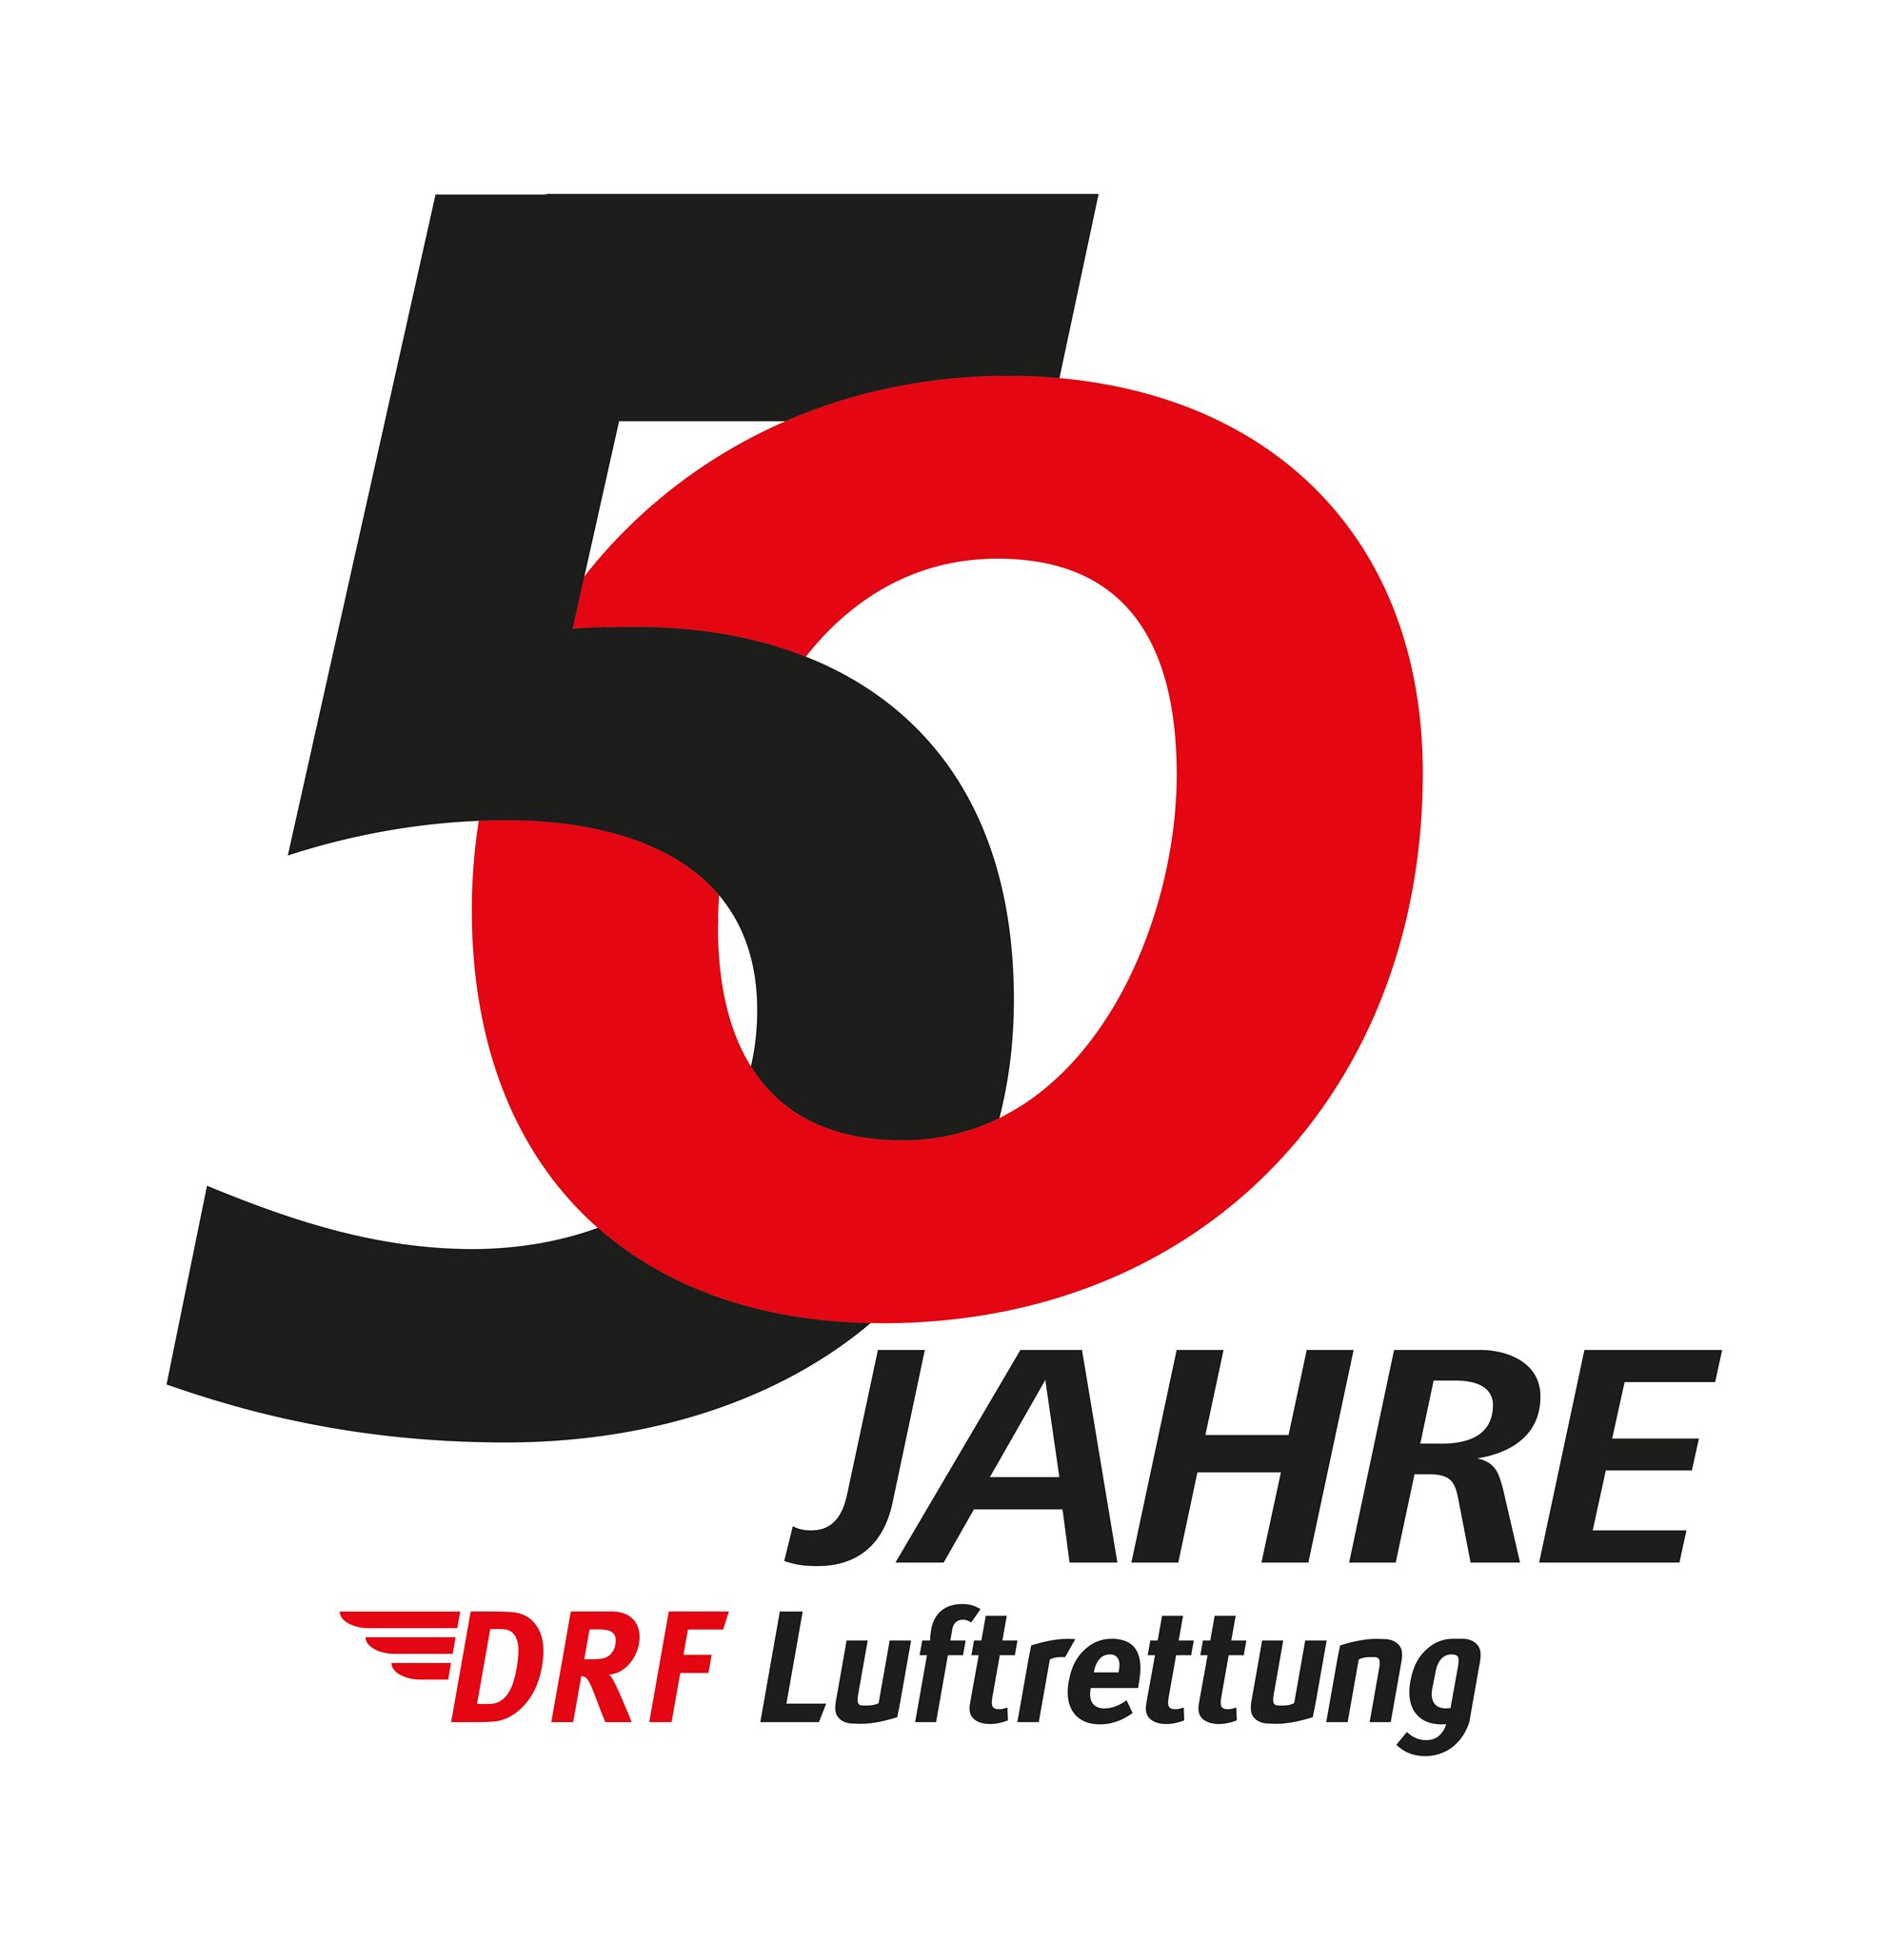 DRF_LUFTRETTUNG_50_Jahre_Logo_final_für_PM-